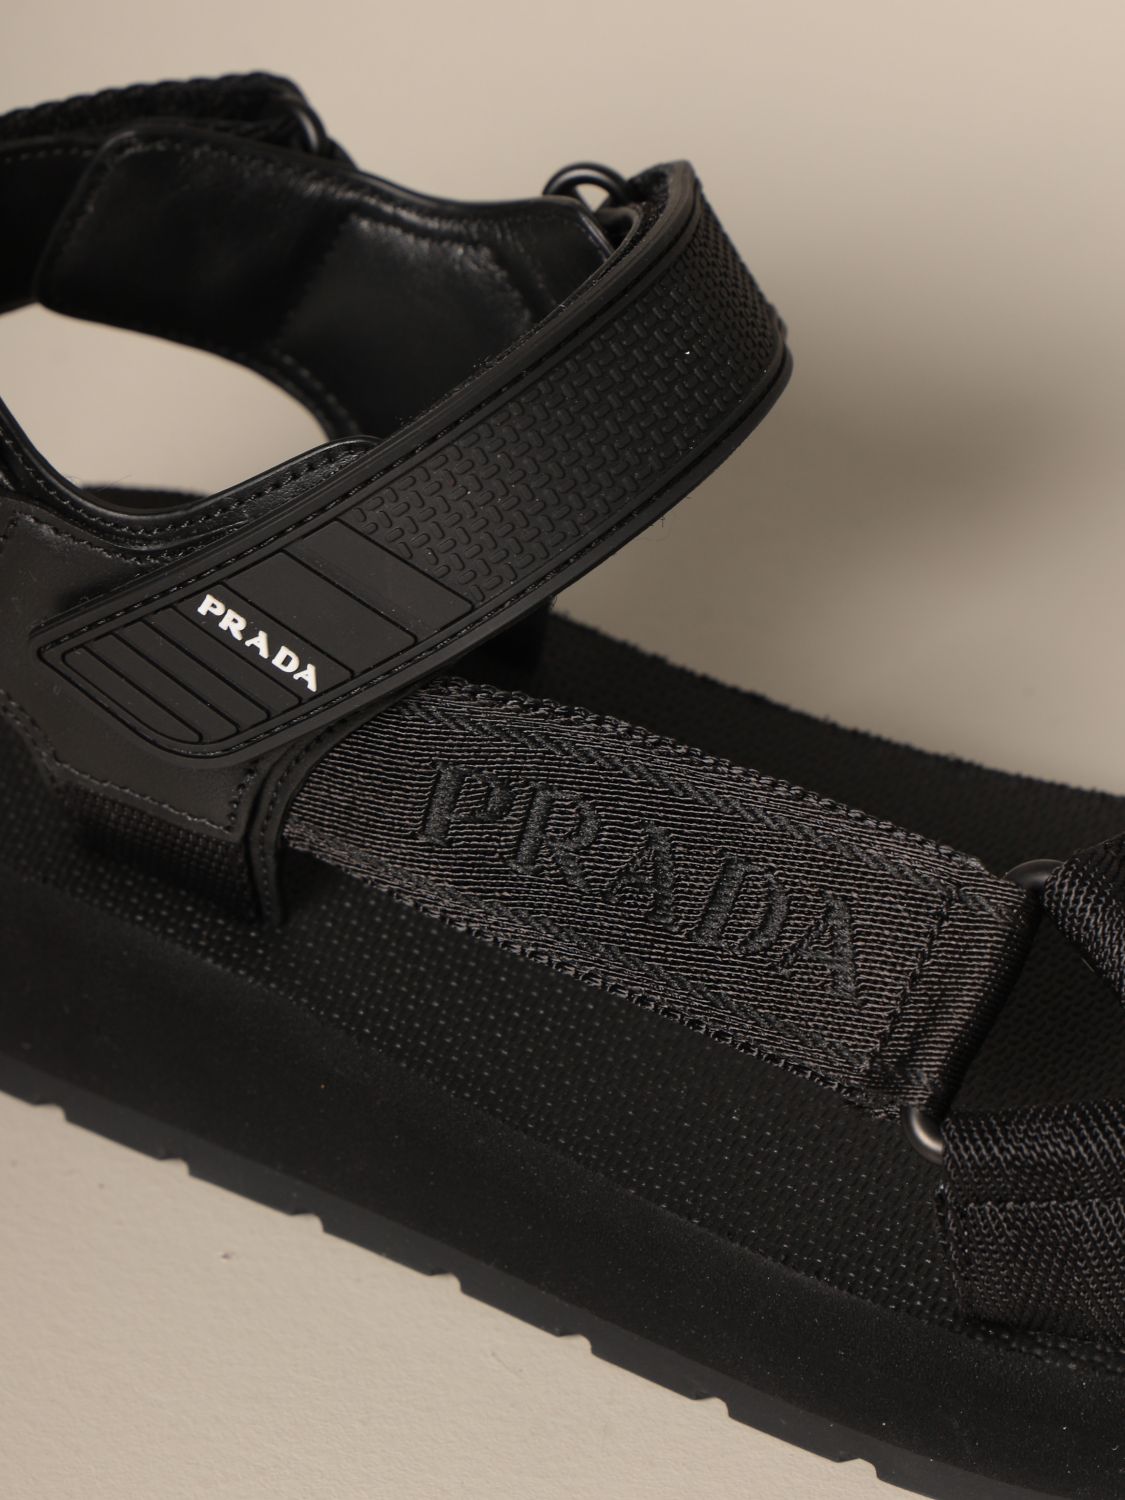 black prada sandals